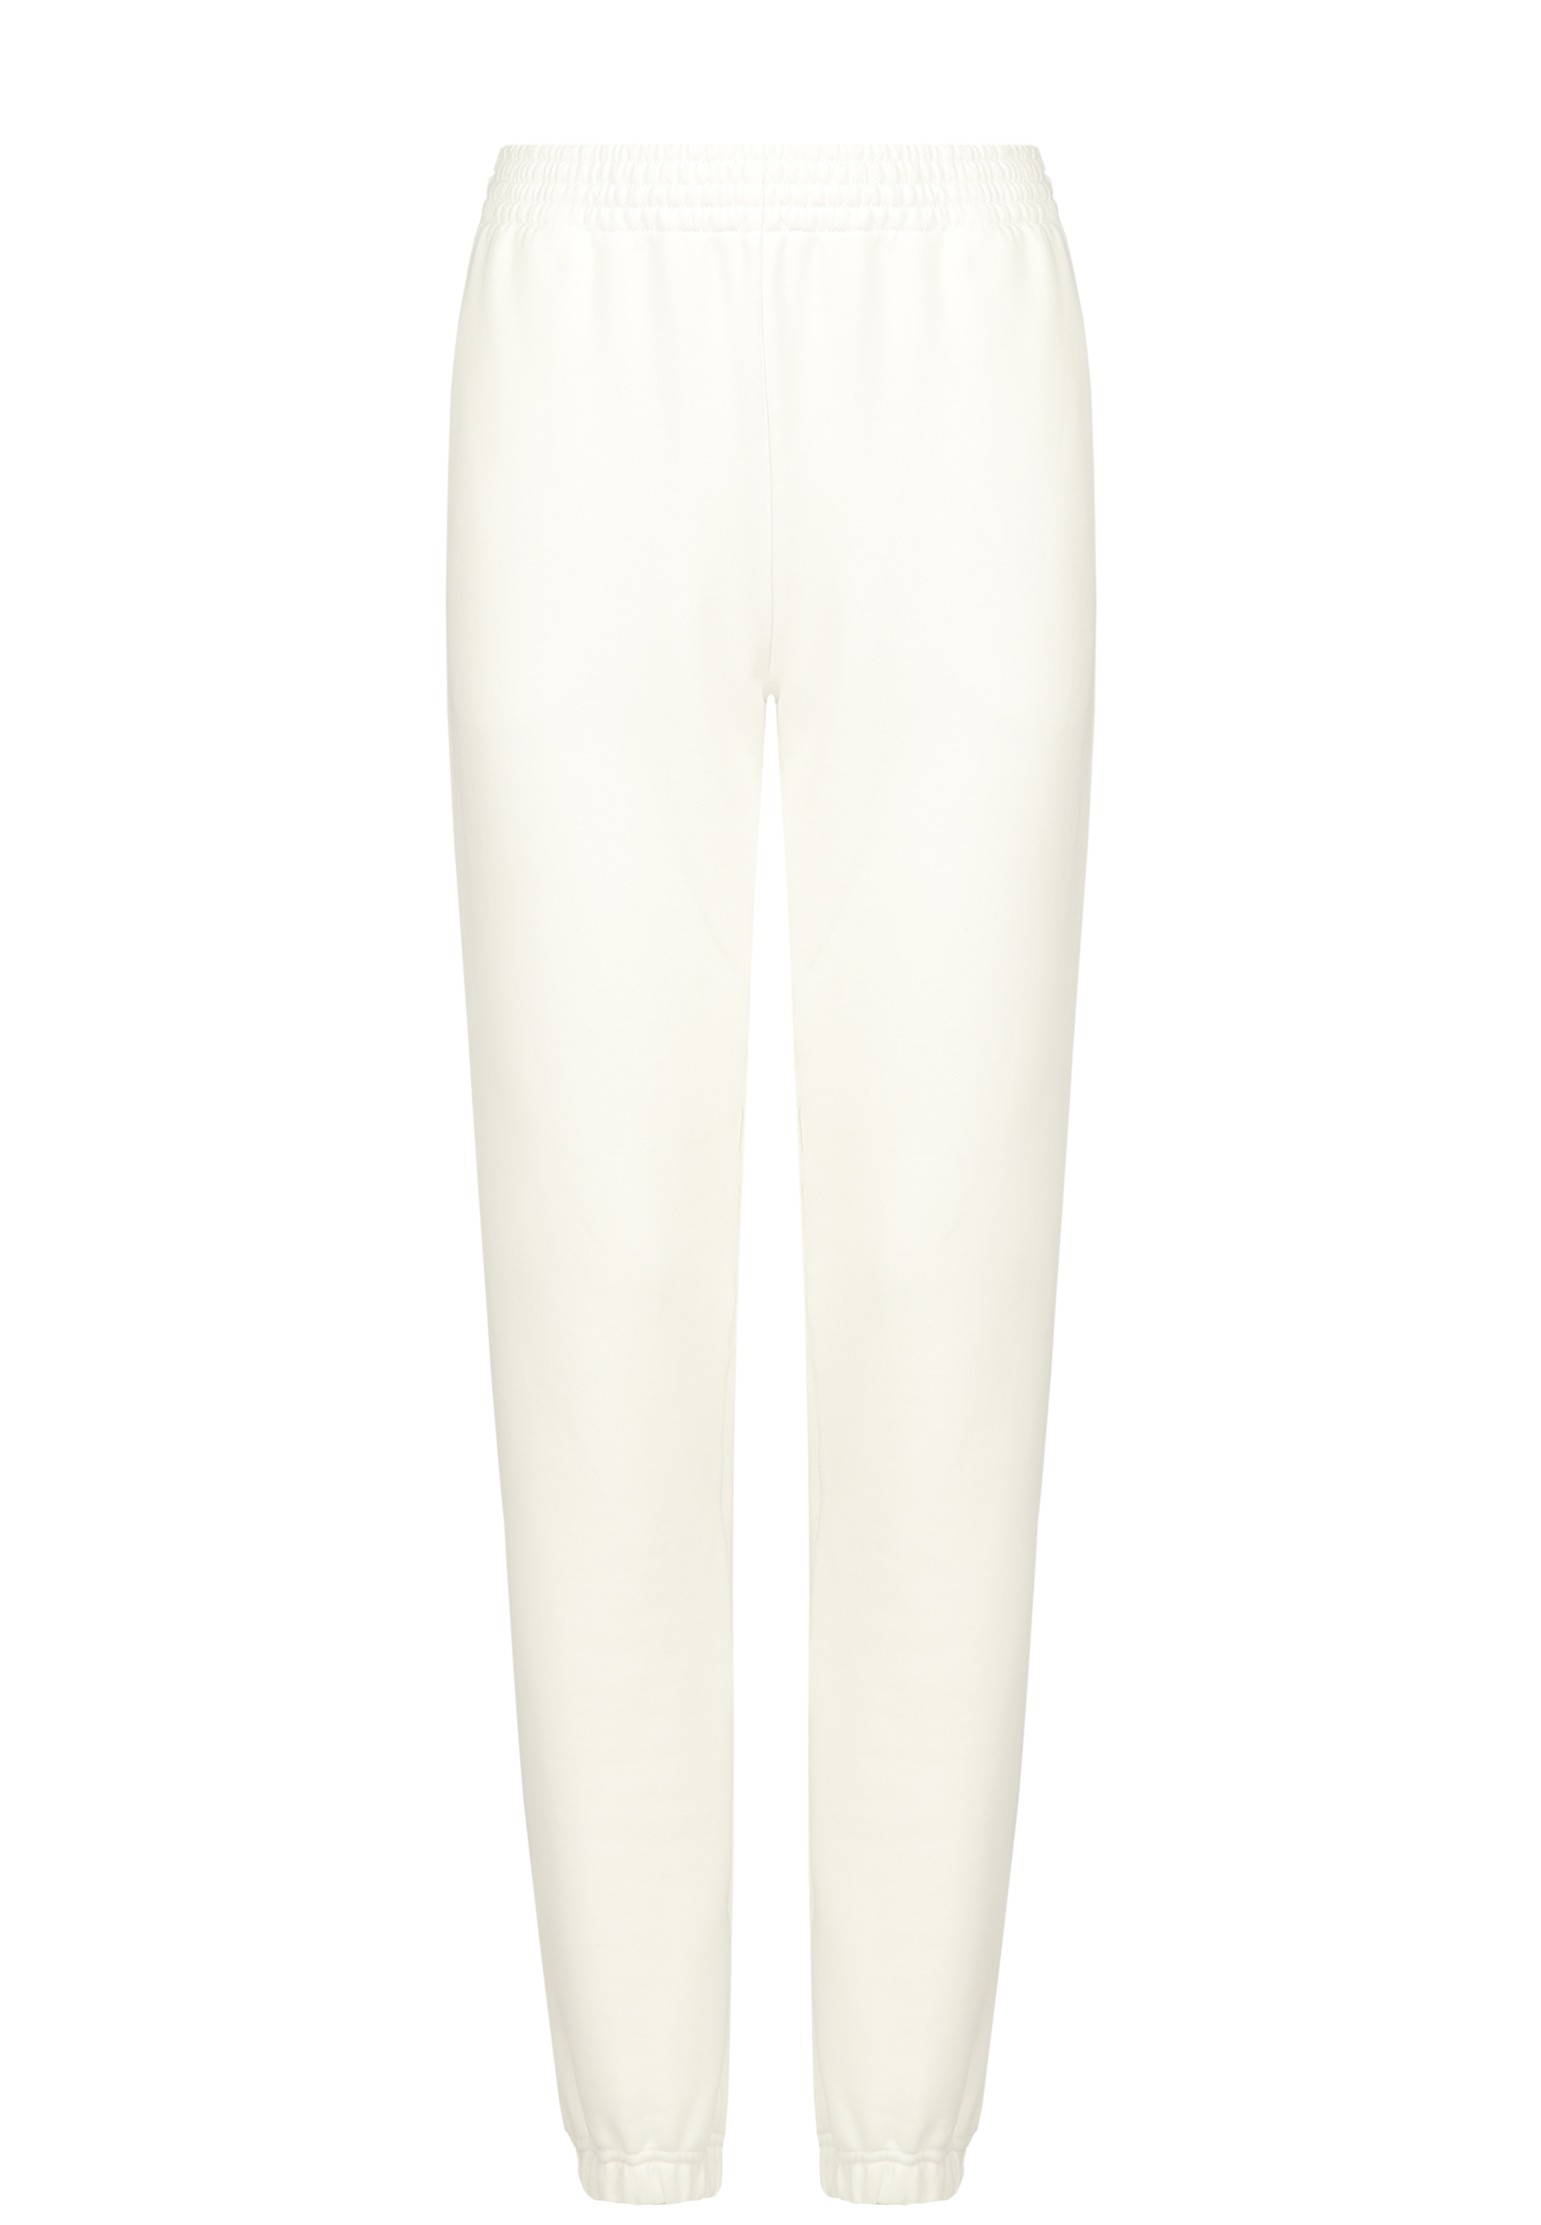 Спортивные брюки женские ELYTS 134814 белые XS